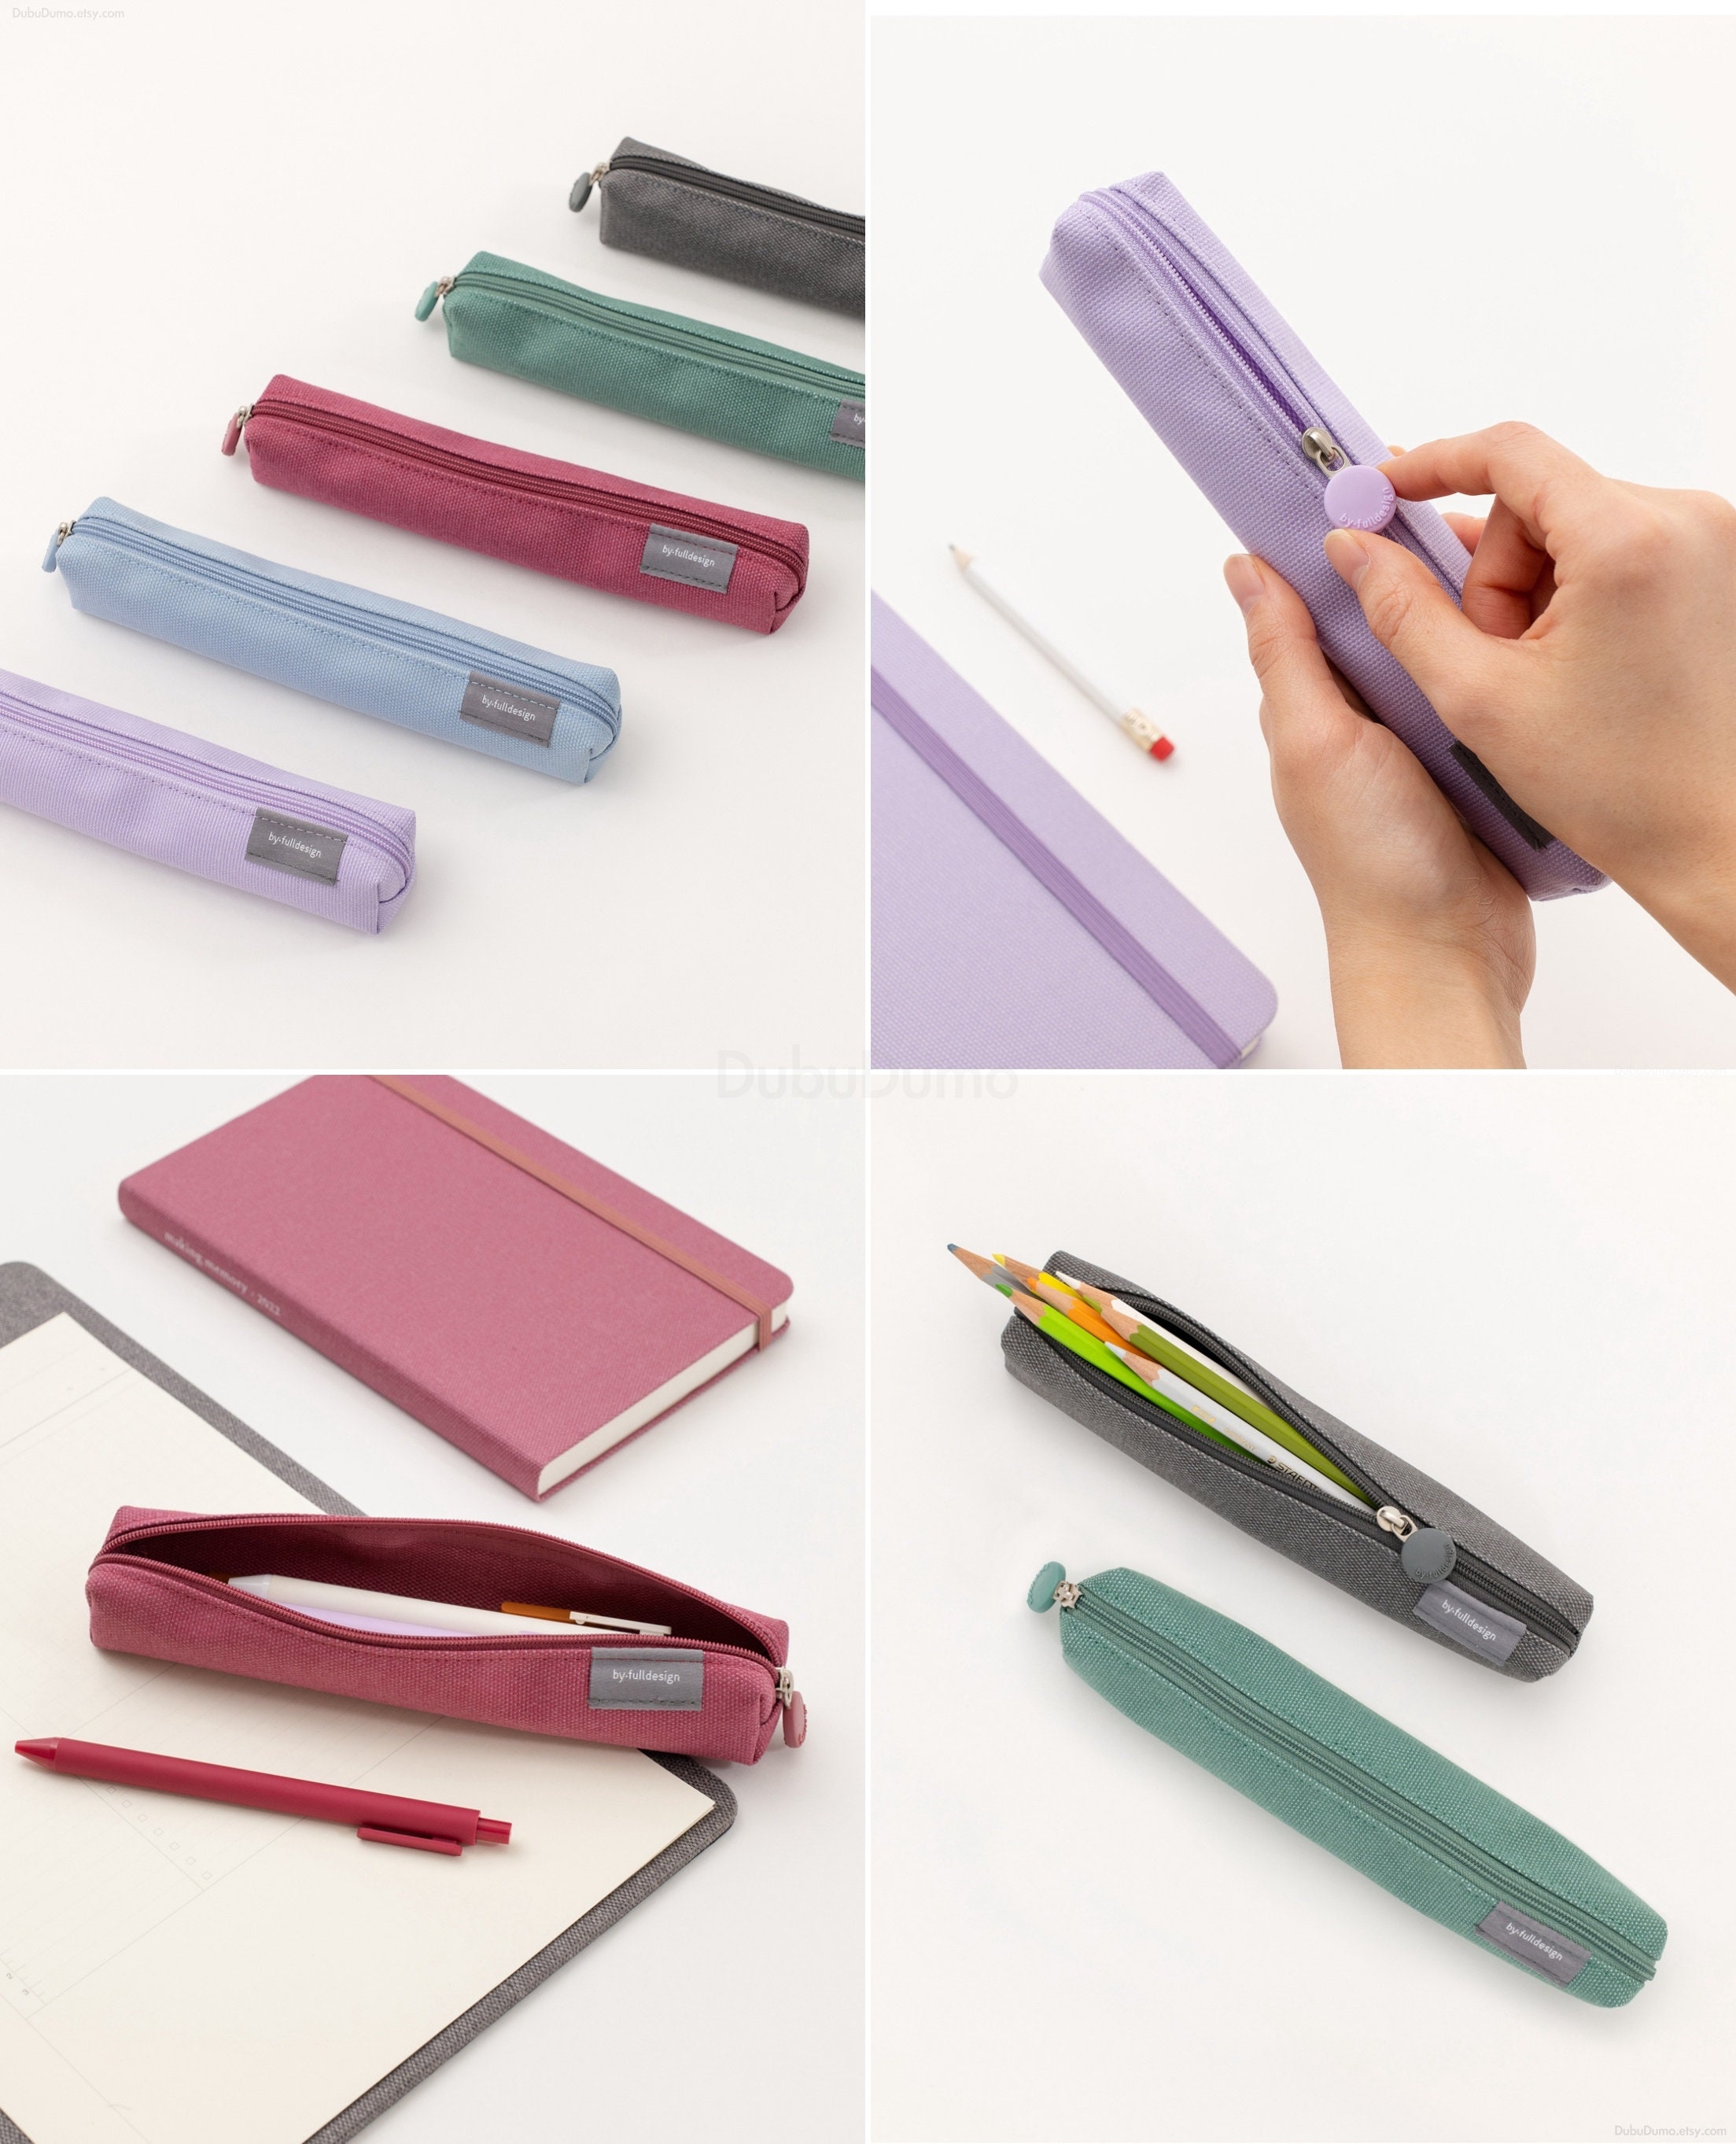 Flat Pencil Case S 5colors / Pen Case / Pencil Pouch / Pen Pouch / Zipper  Pouch / Makeup Pouch, Bag / School Supplies / Dubudumo 